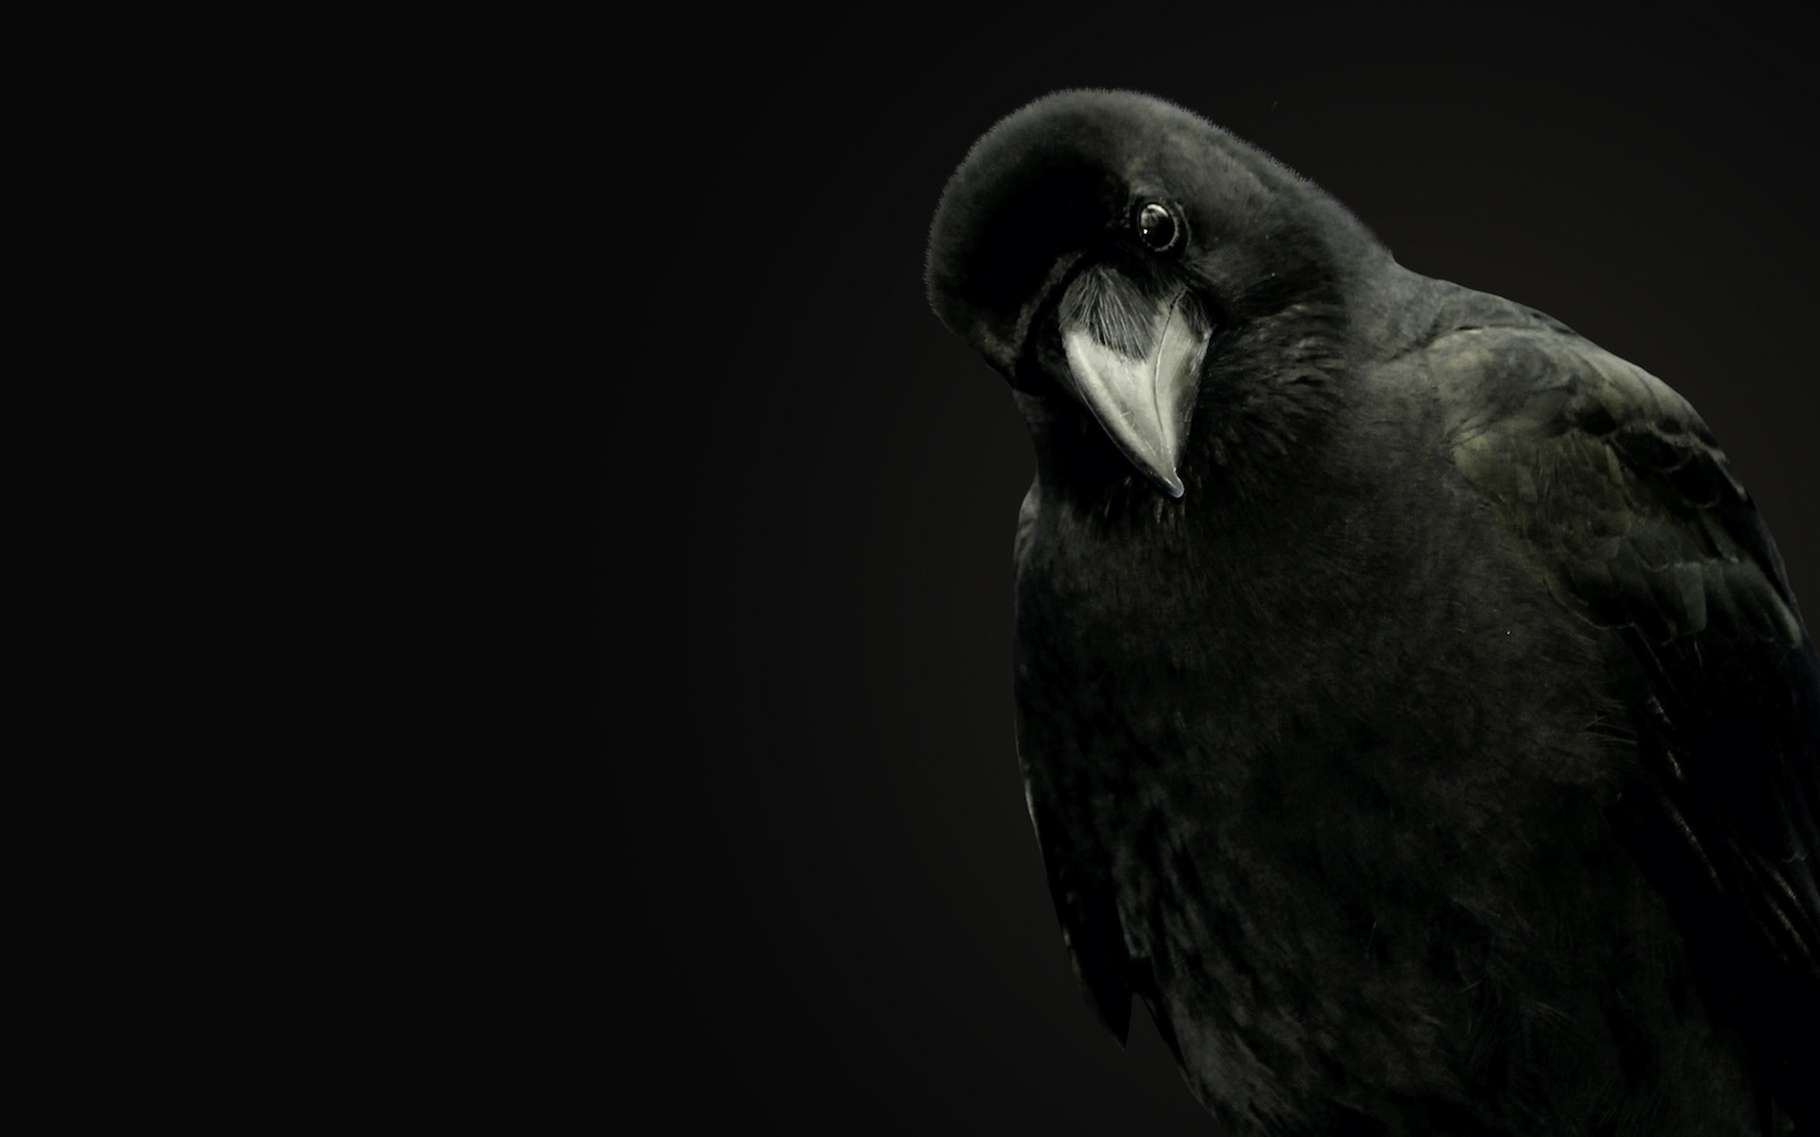 Le corbeau est un oiseau étonnant. Il a de la mémoire. Il a conscience de lui-même. Il sait utiliser — et même fabriquer — des outils. Il est joueur et empathique. Et tout ça serait rendu possible par la présence dans son cerveau d’un nombre important d’interneurones. De quoi assurer au corbeau de ne jamais être vraiment bête ! © Photoeuro, Adobe Stock